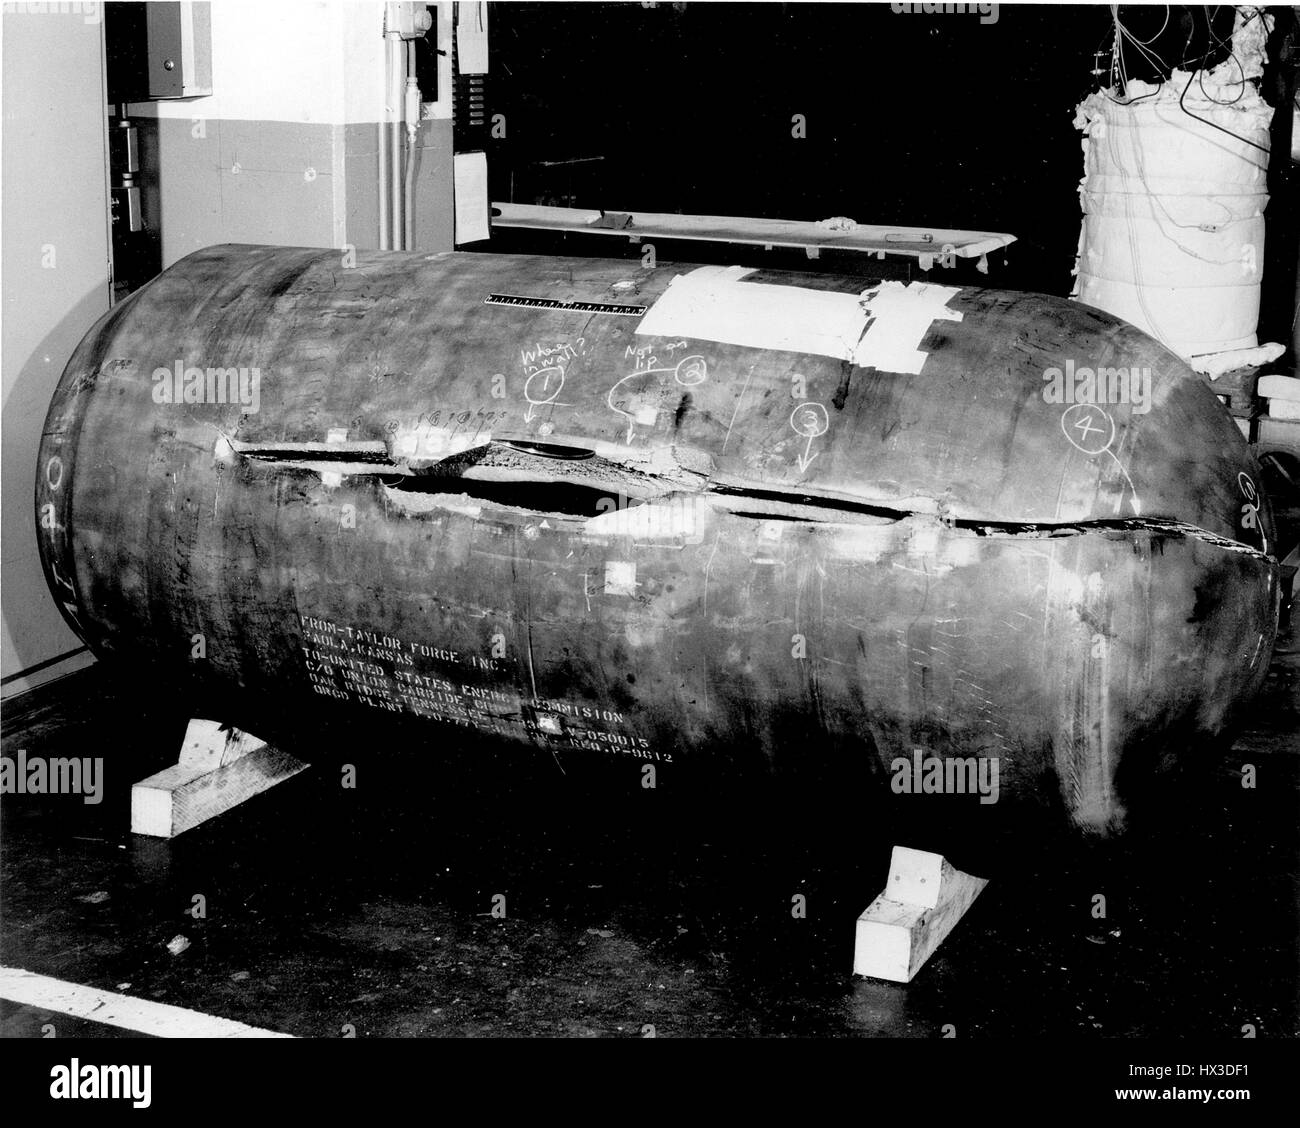 Raffreddati ad acqua recipiente di reattore di modello che è stato volutamente manipolate e poi messo sotto pressione al punto di errore per ottenere dati, 1973. Immagine cortesia del Dipartimento Americano di Energia. Foto Stock